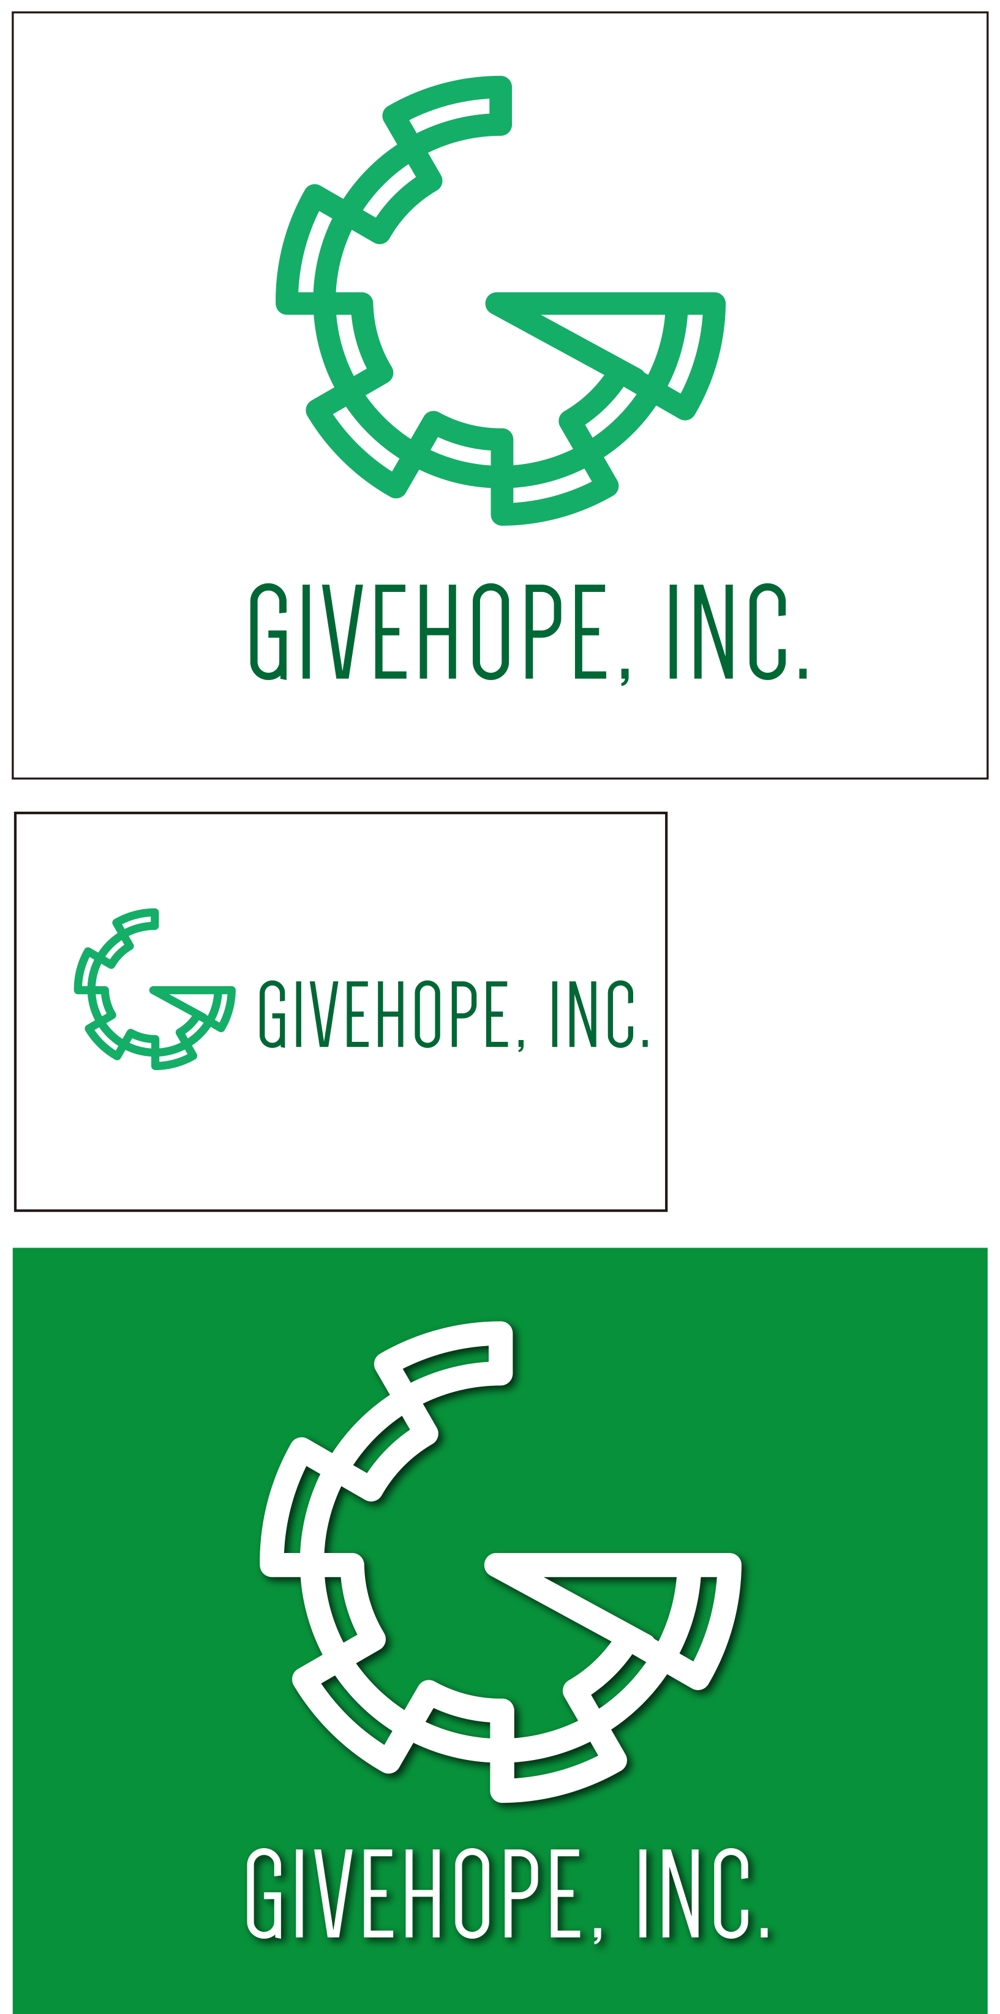 GIVEHOPE-001 4.jpg